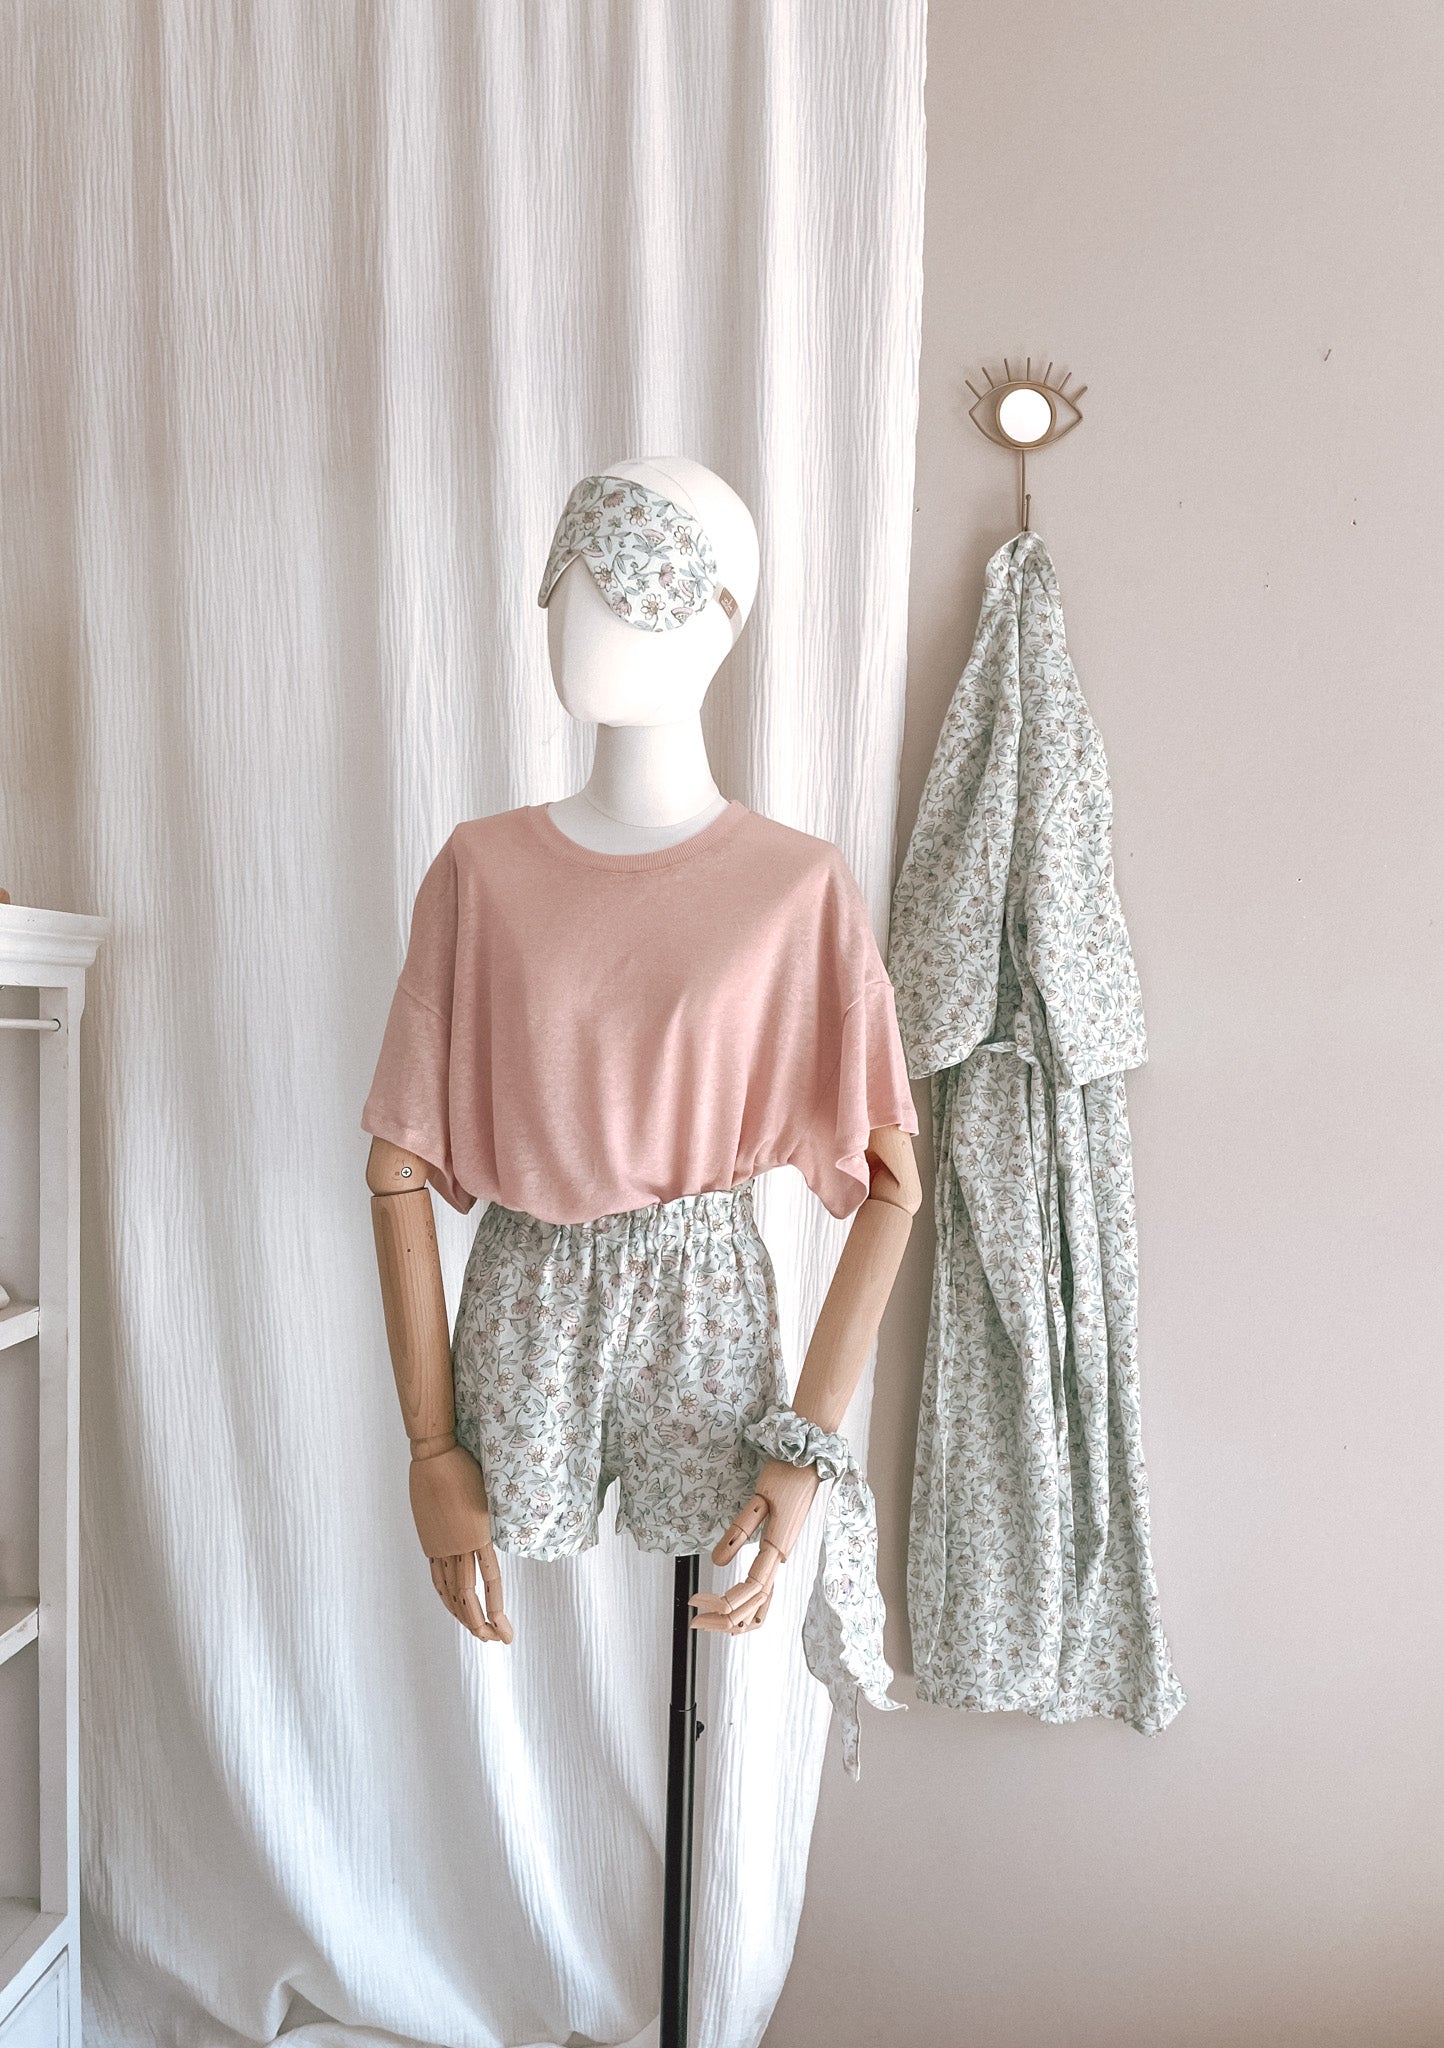 Linen ruffle shorts / floral mint